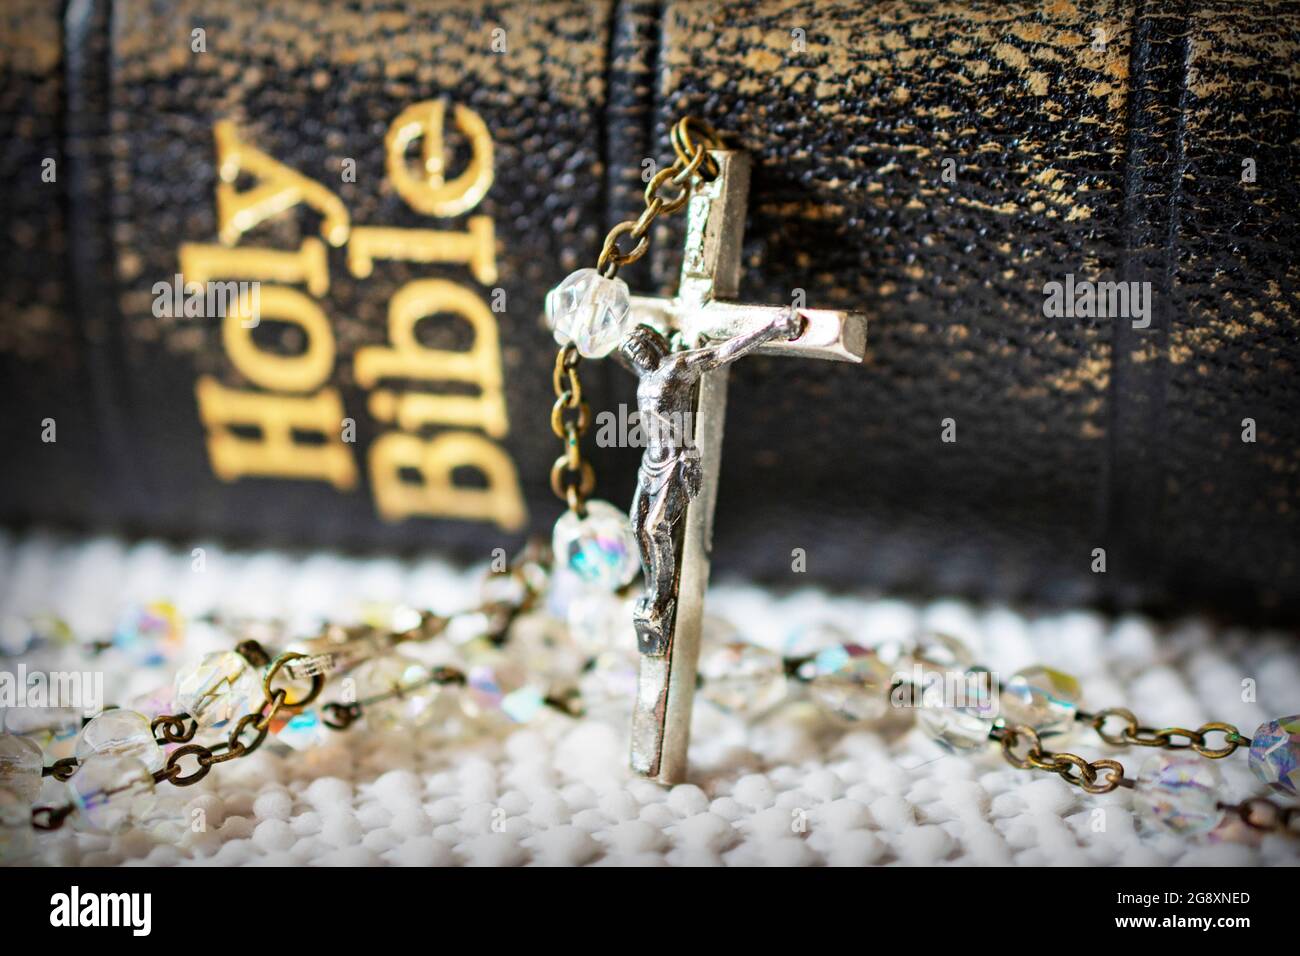 Kruzifix und Rosenkranz Kette auf der bibel, Rosenkranz Kette  Stockfotografie - Alamy